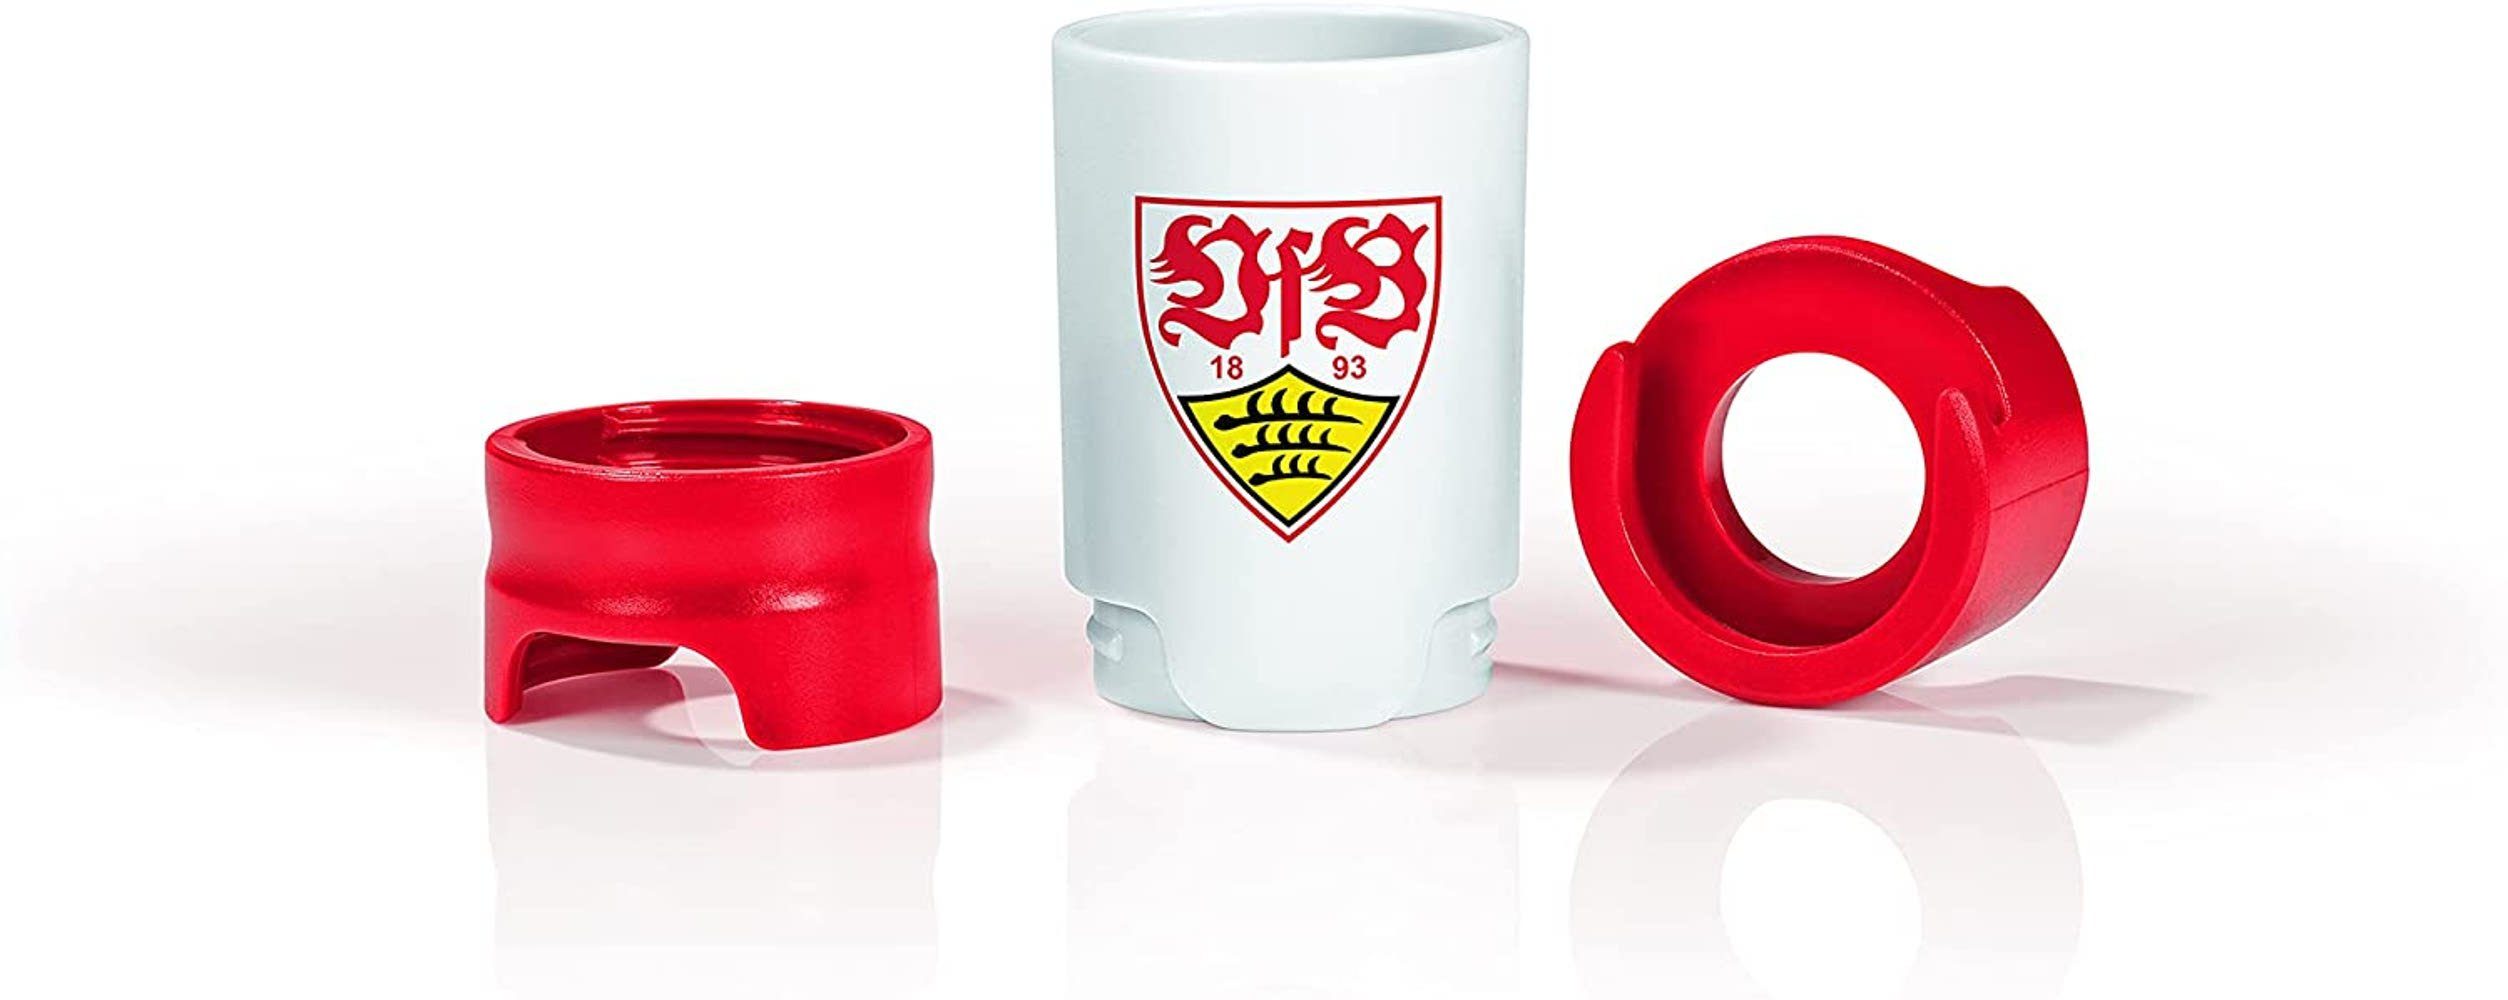 Flaschenausgießer Taste Hero, 3-St., 3x VfB Stuttgart Bier-Aufbereiter passend für Glas- PET-Flaschen